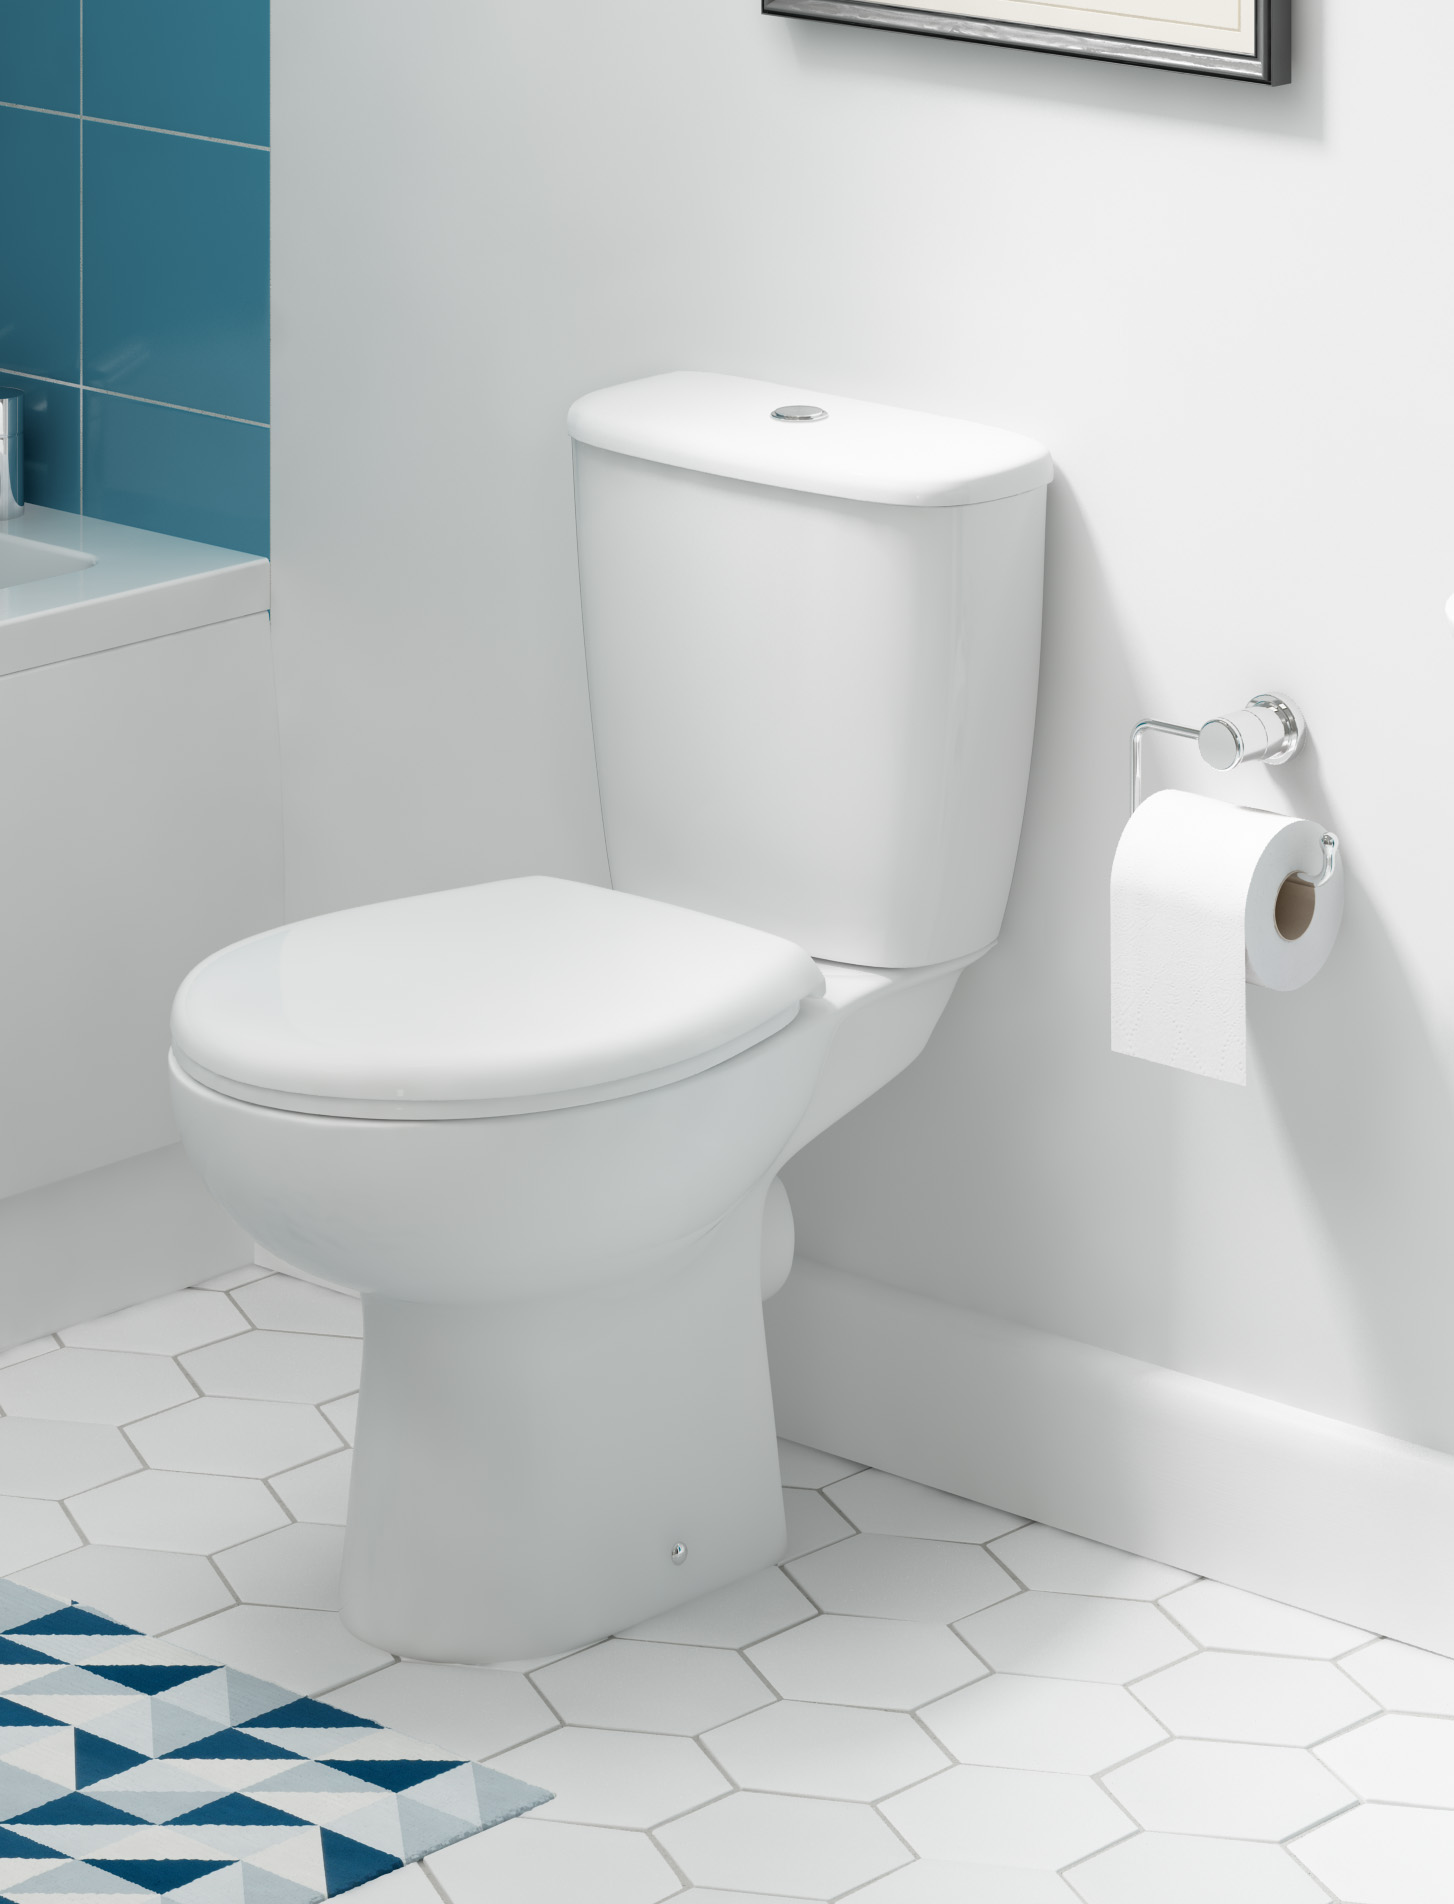 Lecico | Atlas | ASWHSMPA | Toilet Pans | Lifestyle